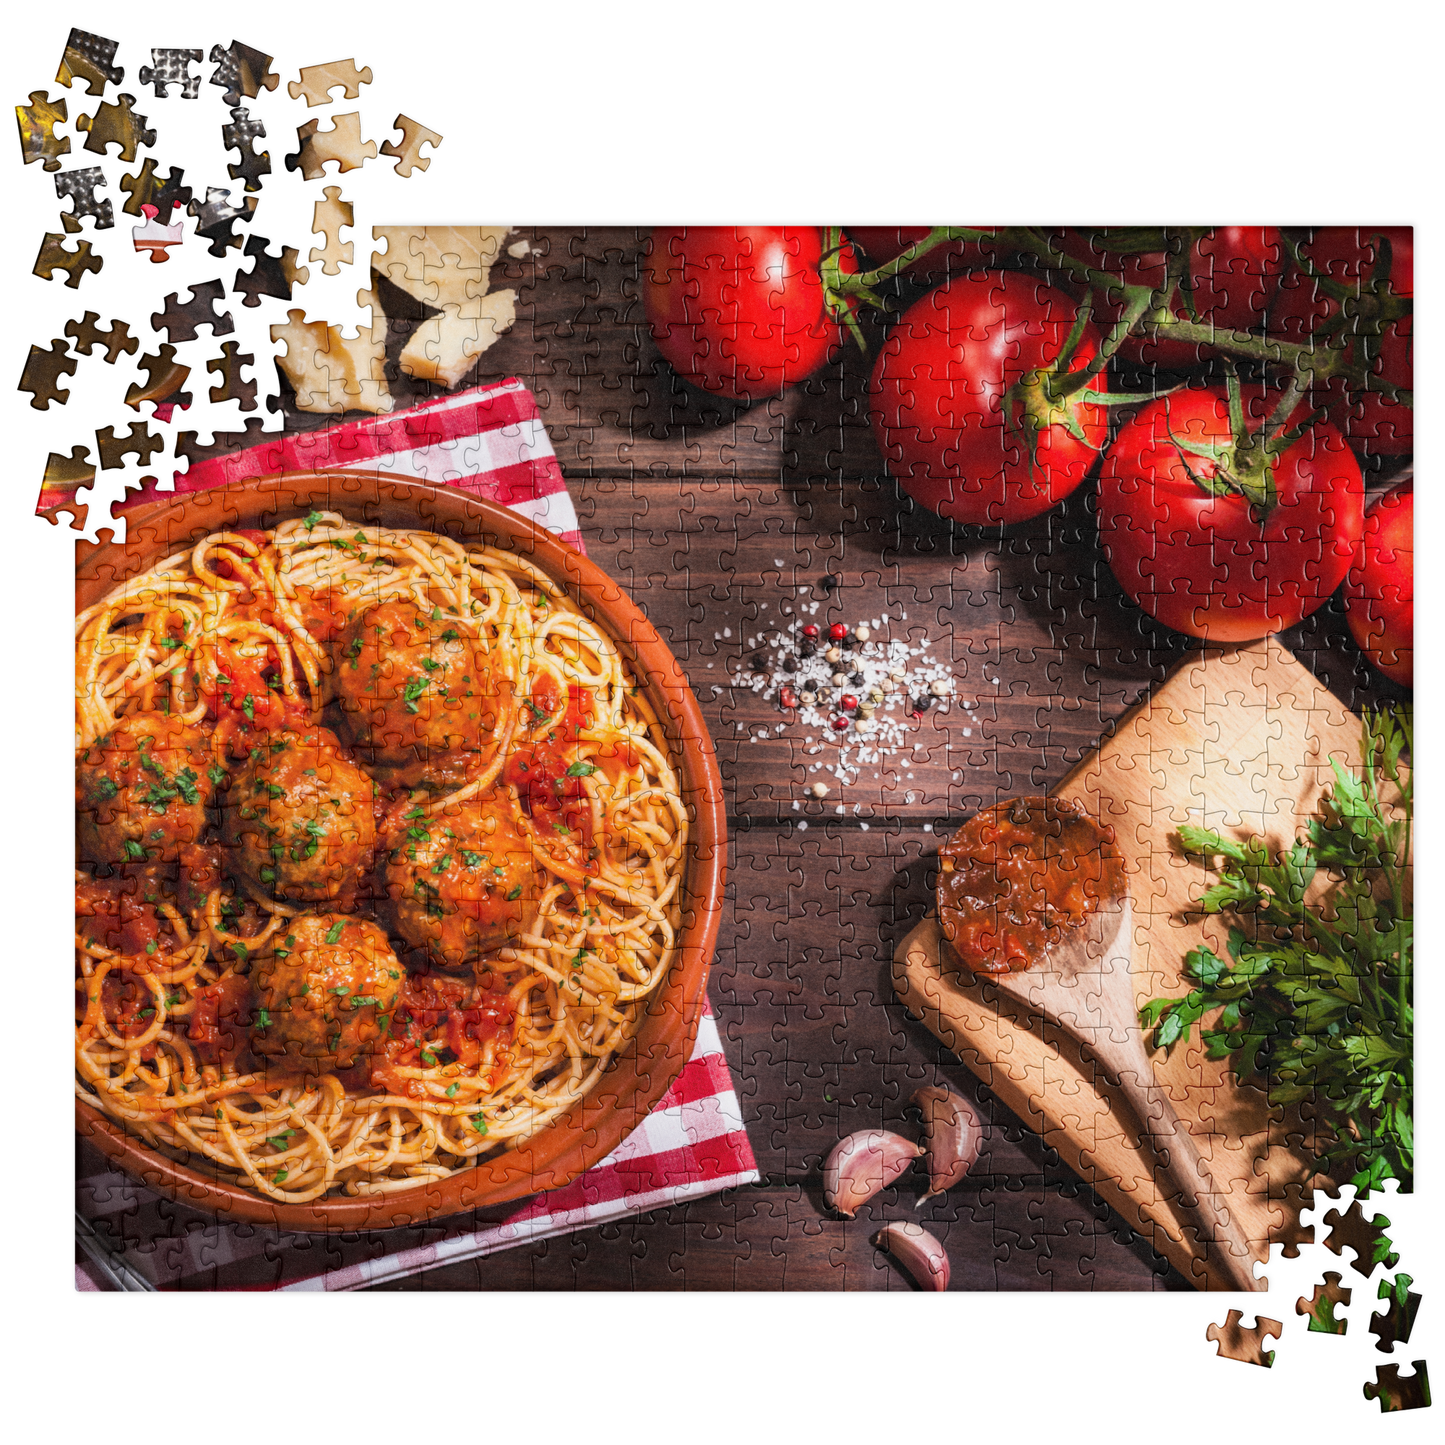 Food Fare Jigsaw Puzzle: Spaghetti & Meatballs